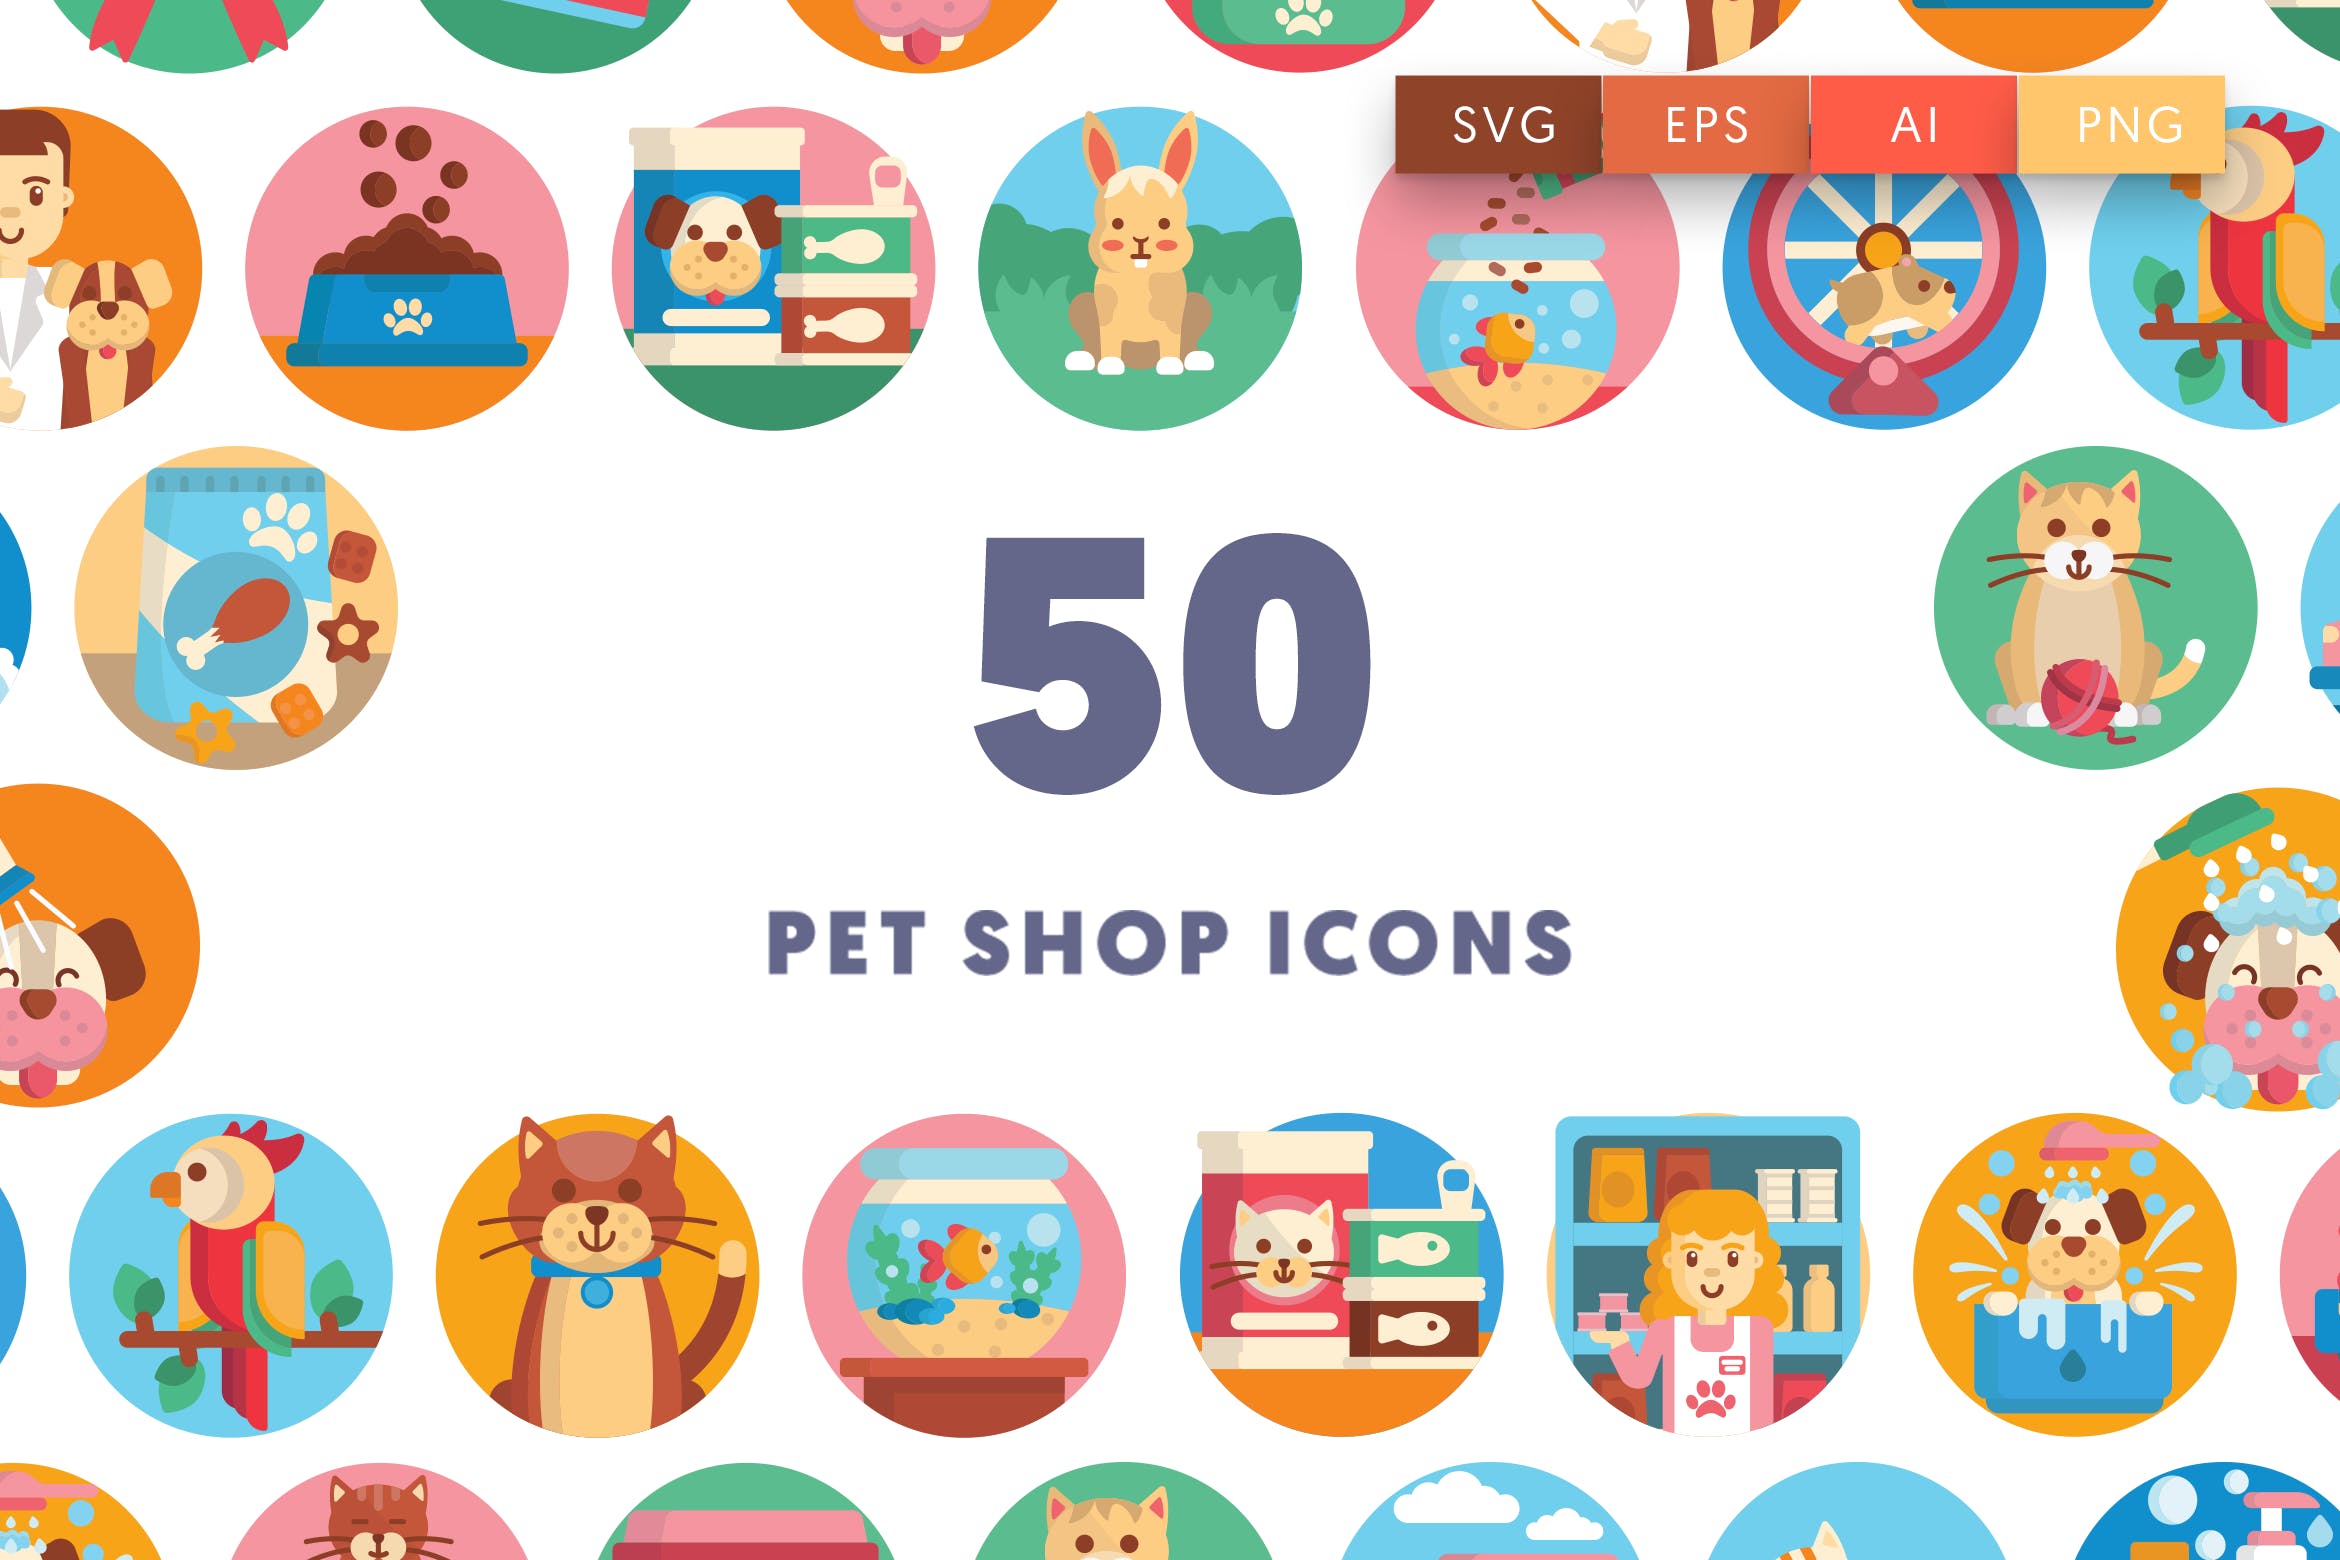 50枚宠物主题矢量圆形素材库精选图标 Pet Shop Icons插图